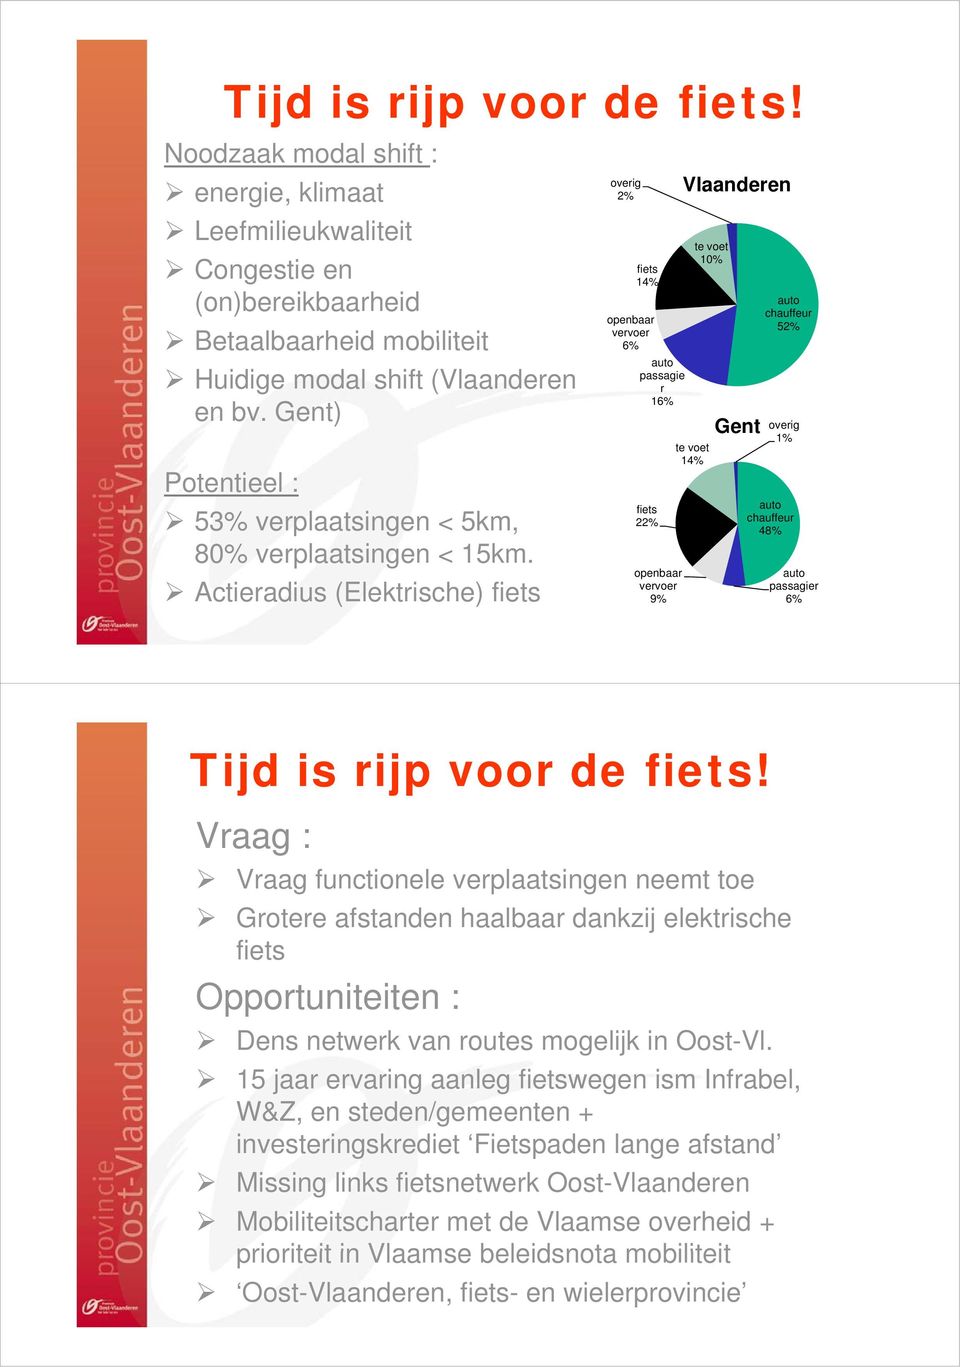 Actieradius (Elektrische) fiets Vlaanderen 2% overig fiets 14% openbaar vervoer 6% auto passagie r 16% fiets 22% openbaar vervoer 9% te voet 14% te voet 10% Gent auto chauffeur 52% overig 1% auto